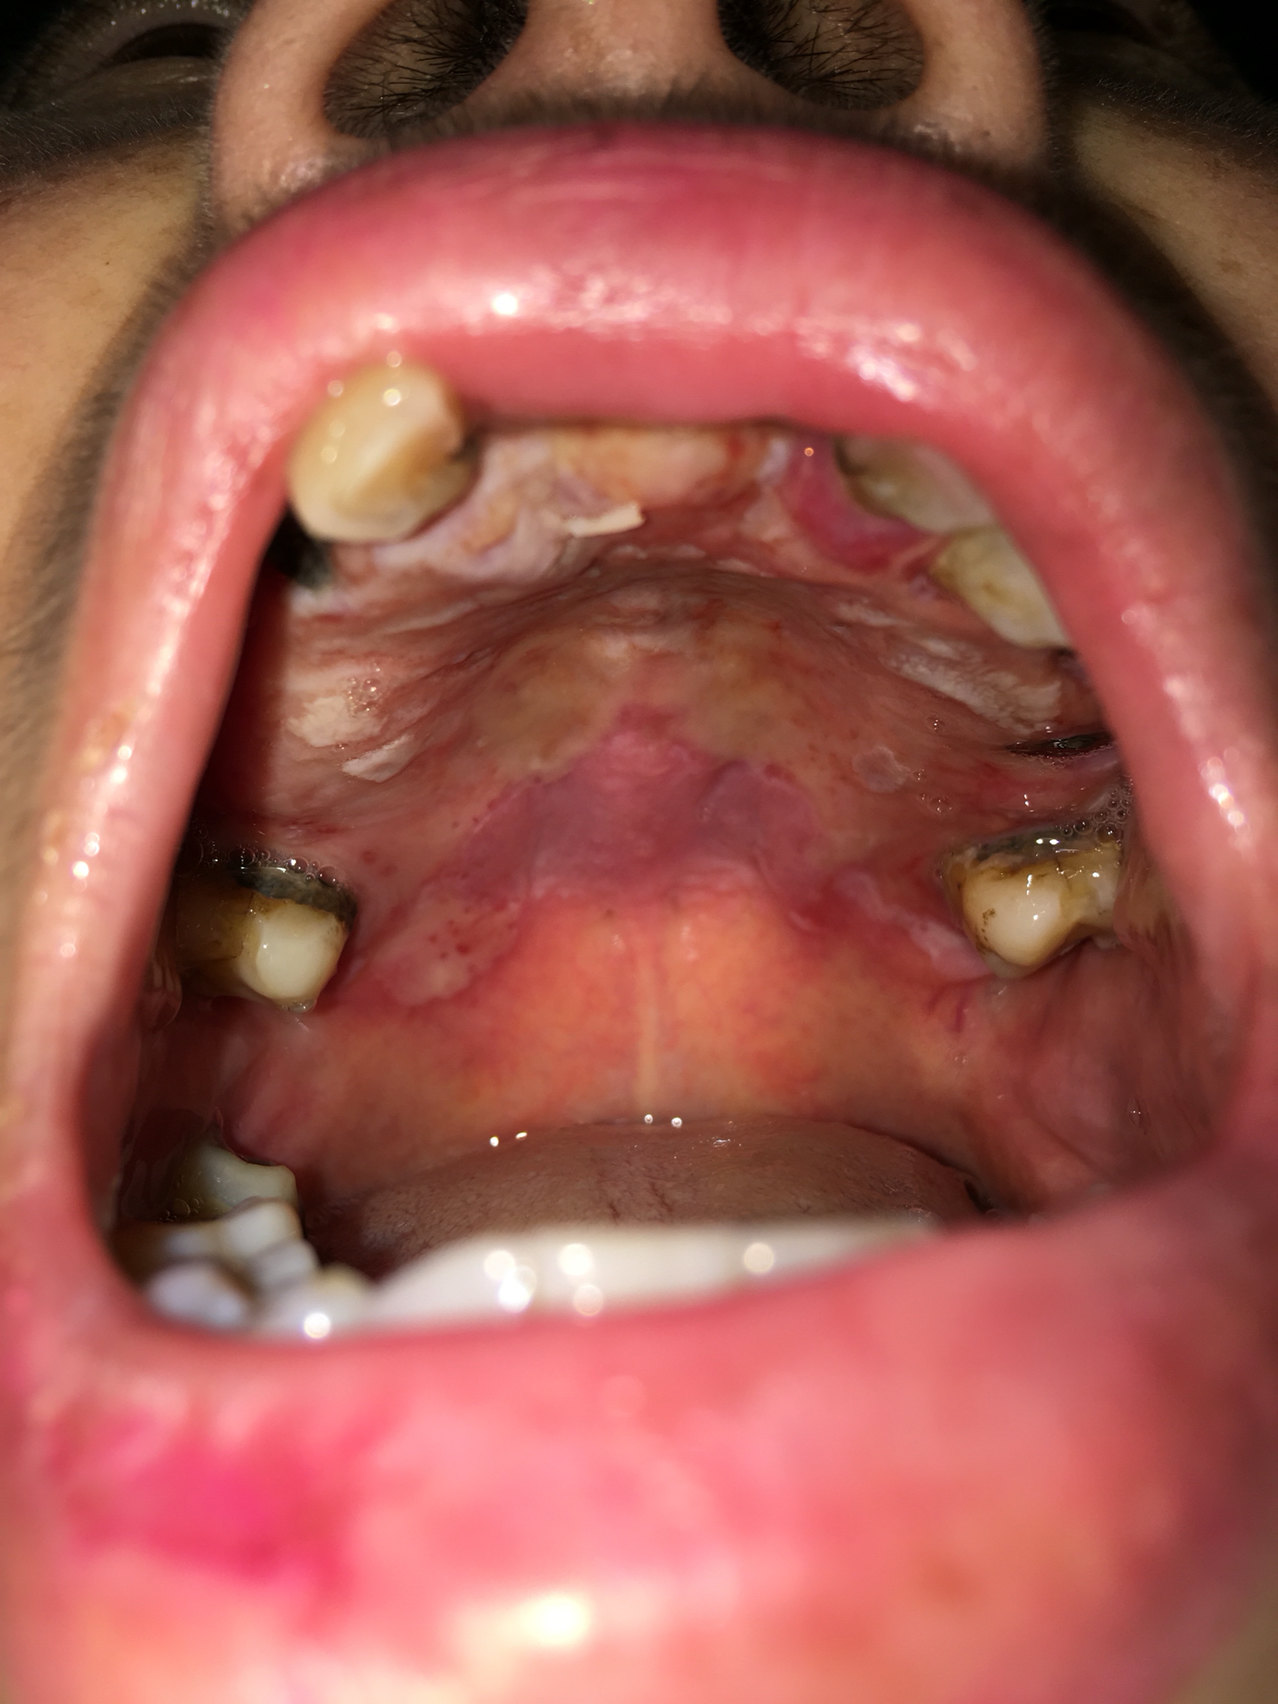 口腔黏膜炎症状图片图片